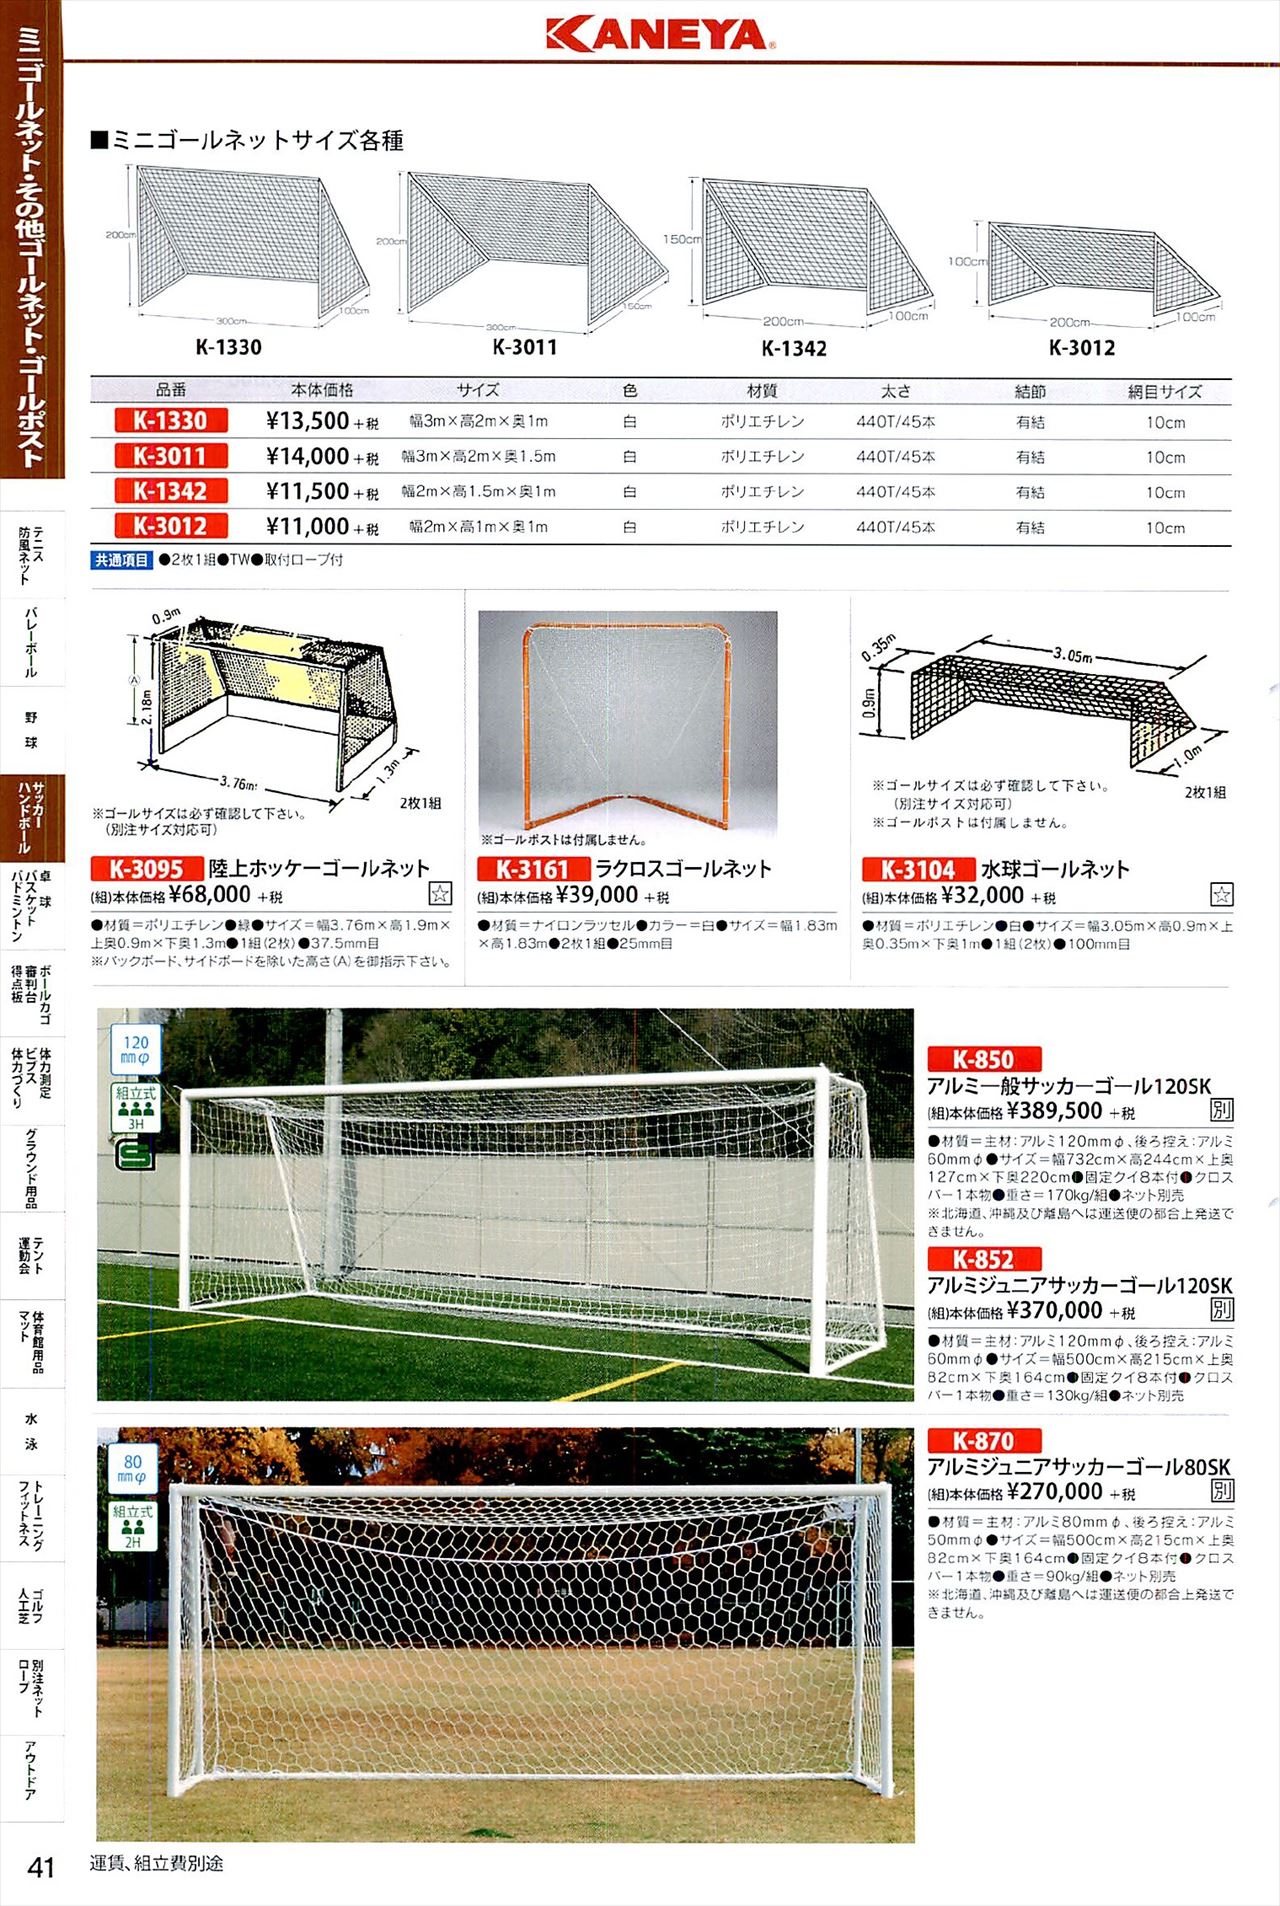 サッカーゴールポストは 鐘屋産業カタログ の ページ41 に掲載されています スポーツメーカーカタログ 目次ページ